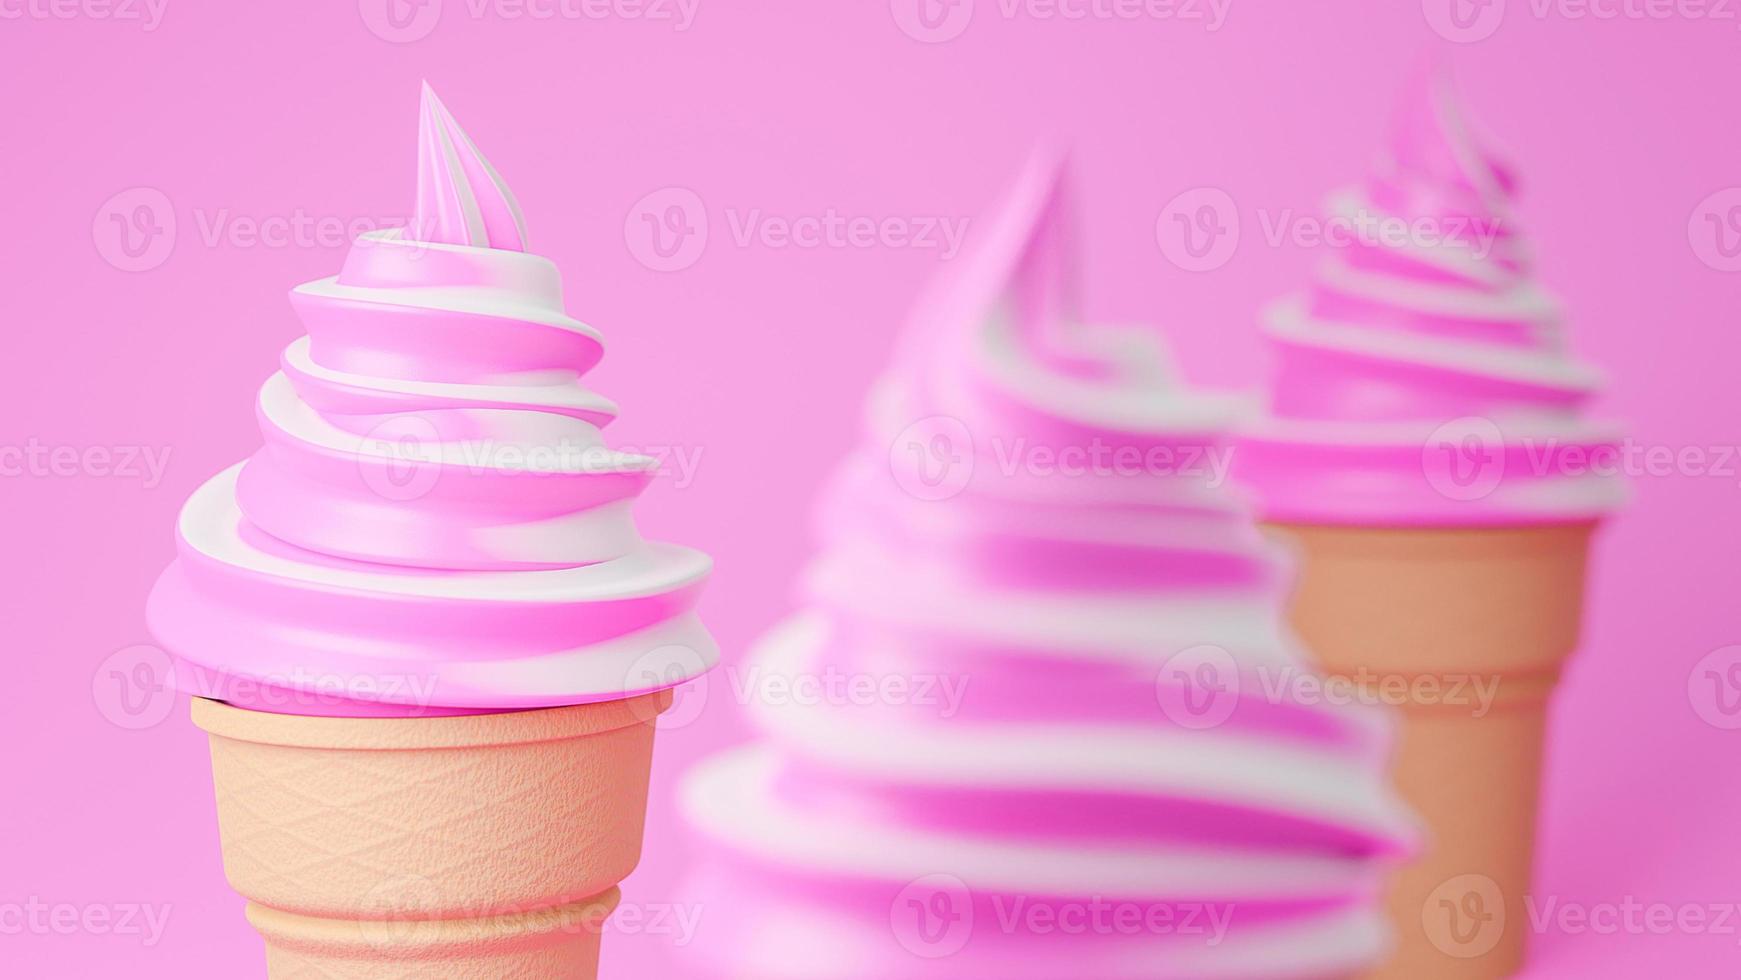 helado de servicio suave de sabores de fresa y leche en cono crujiente sobre fondo rosa., modelo 3d e ilustración. foto